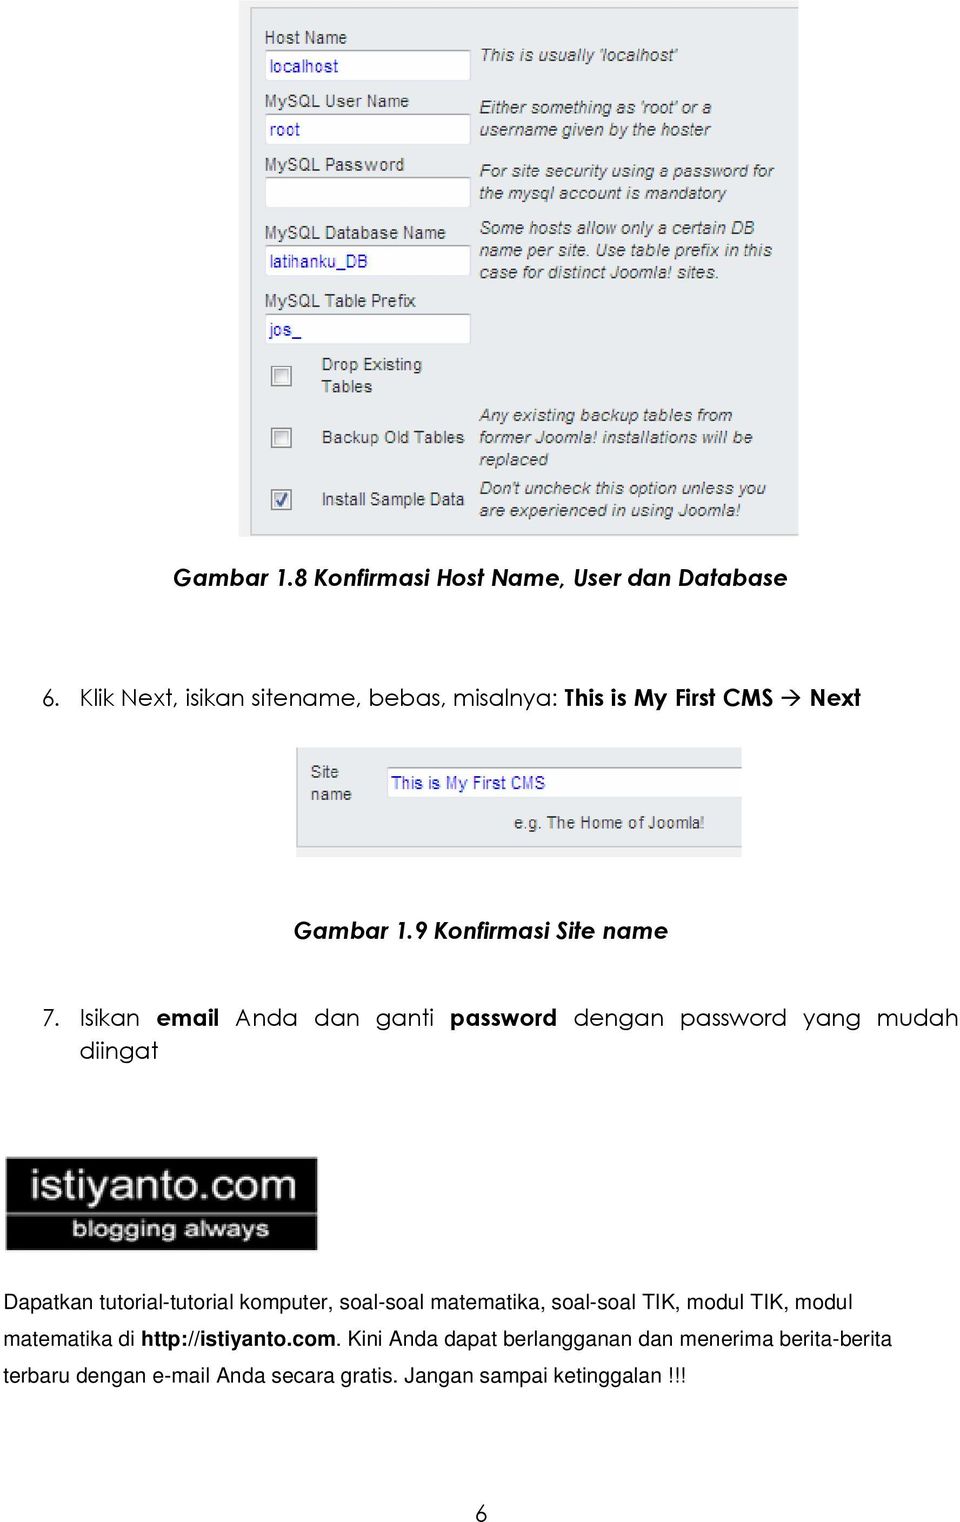 Isikan email Anda dan ganti password dengan password yang mudah diingat Dapatkan tutorial-tutorial komputer, soal-soal